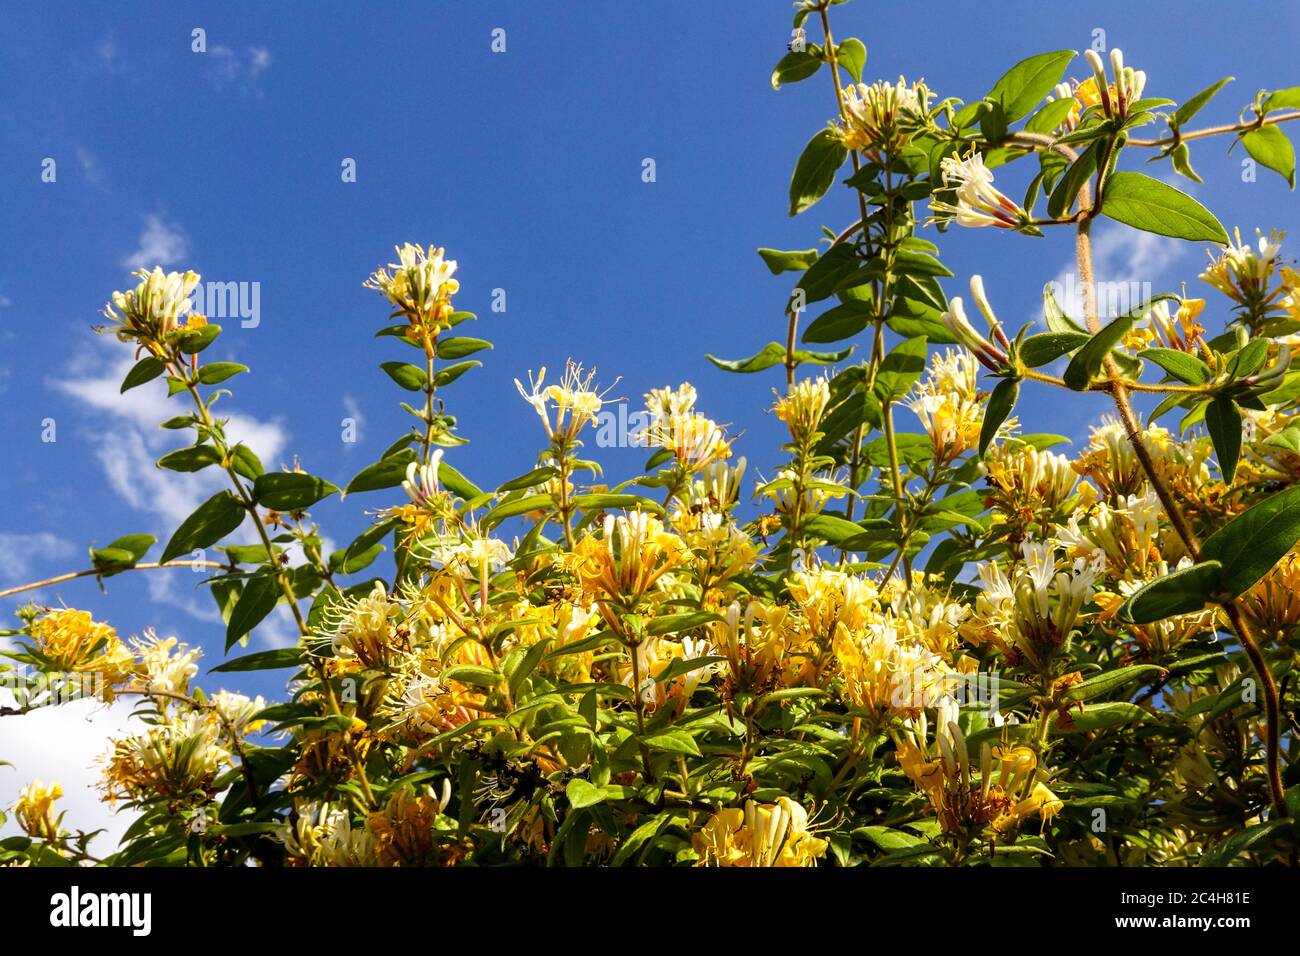 Honeysuckle Lonicera acuminata climbing plant Stock Photo